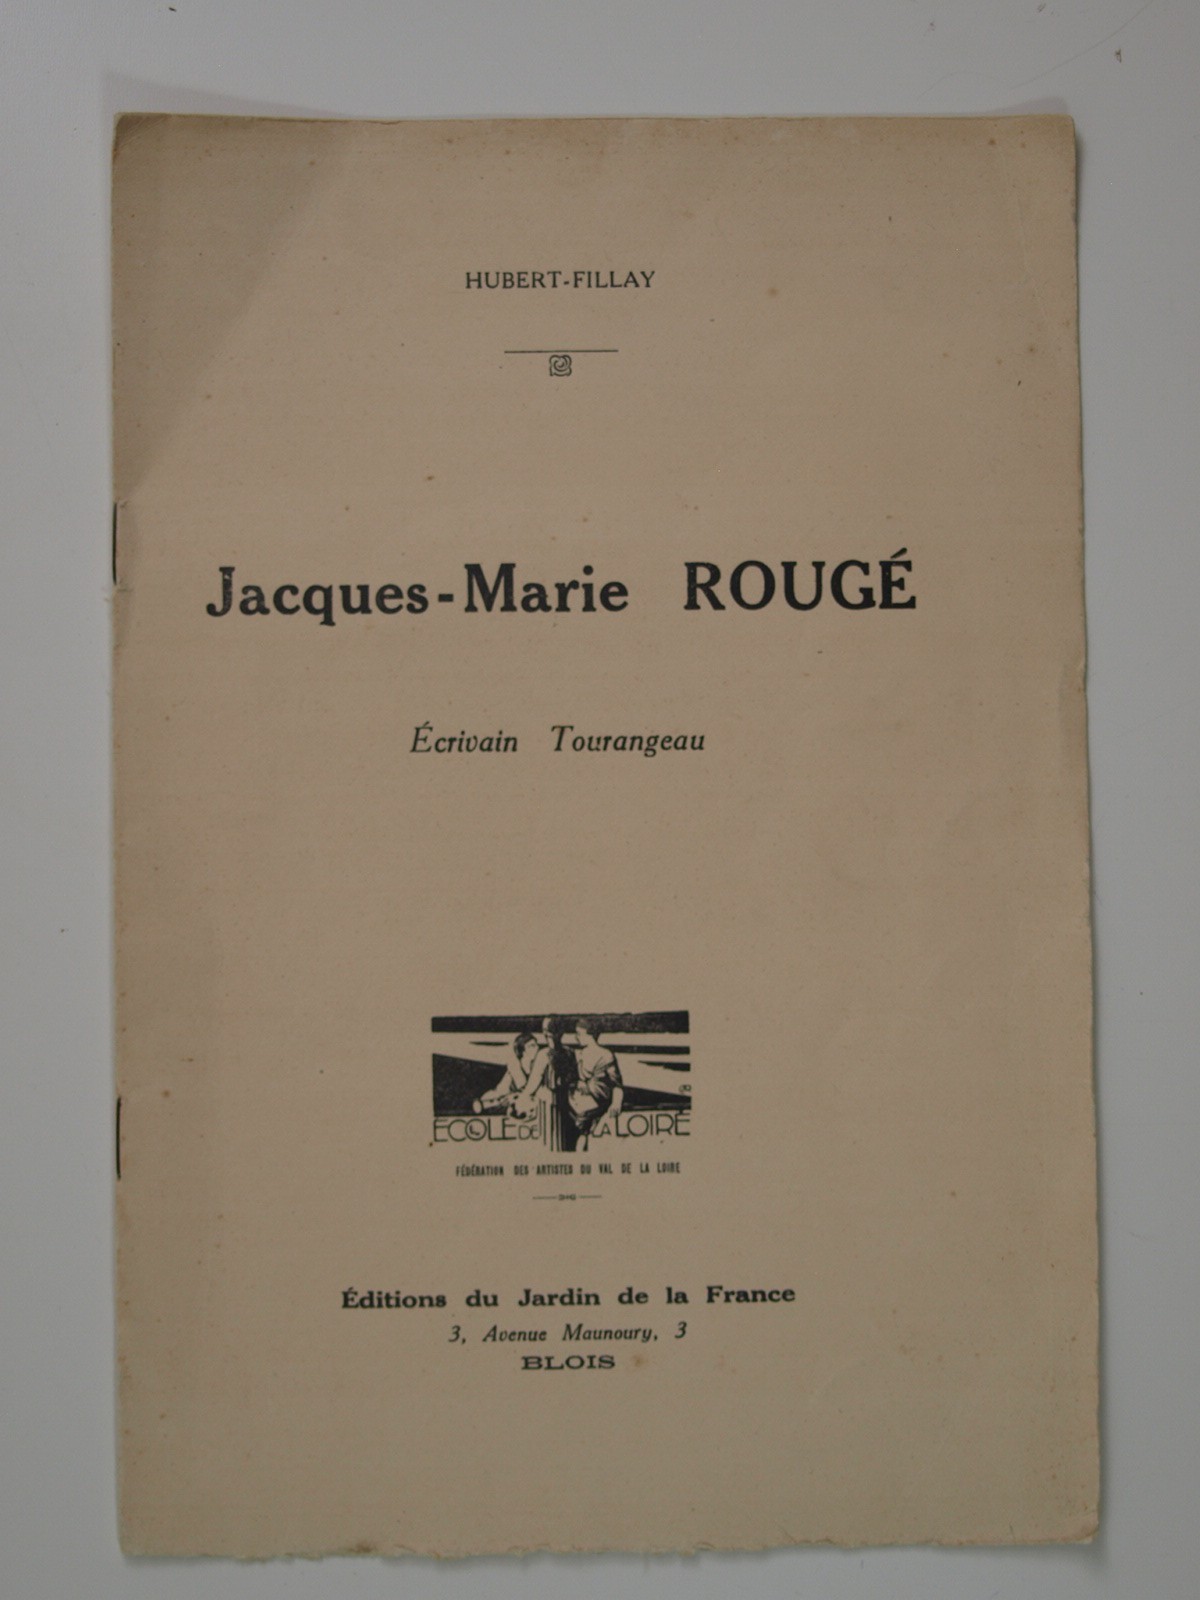 Hubert-Fillay : Jacques-Marie Rougé